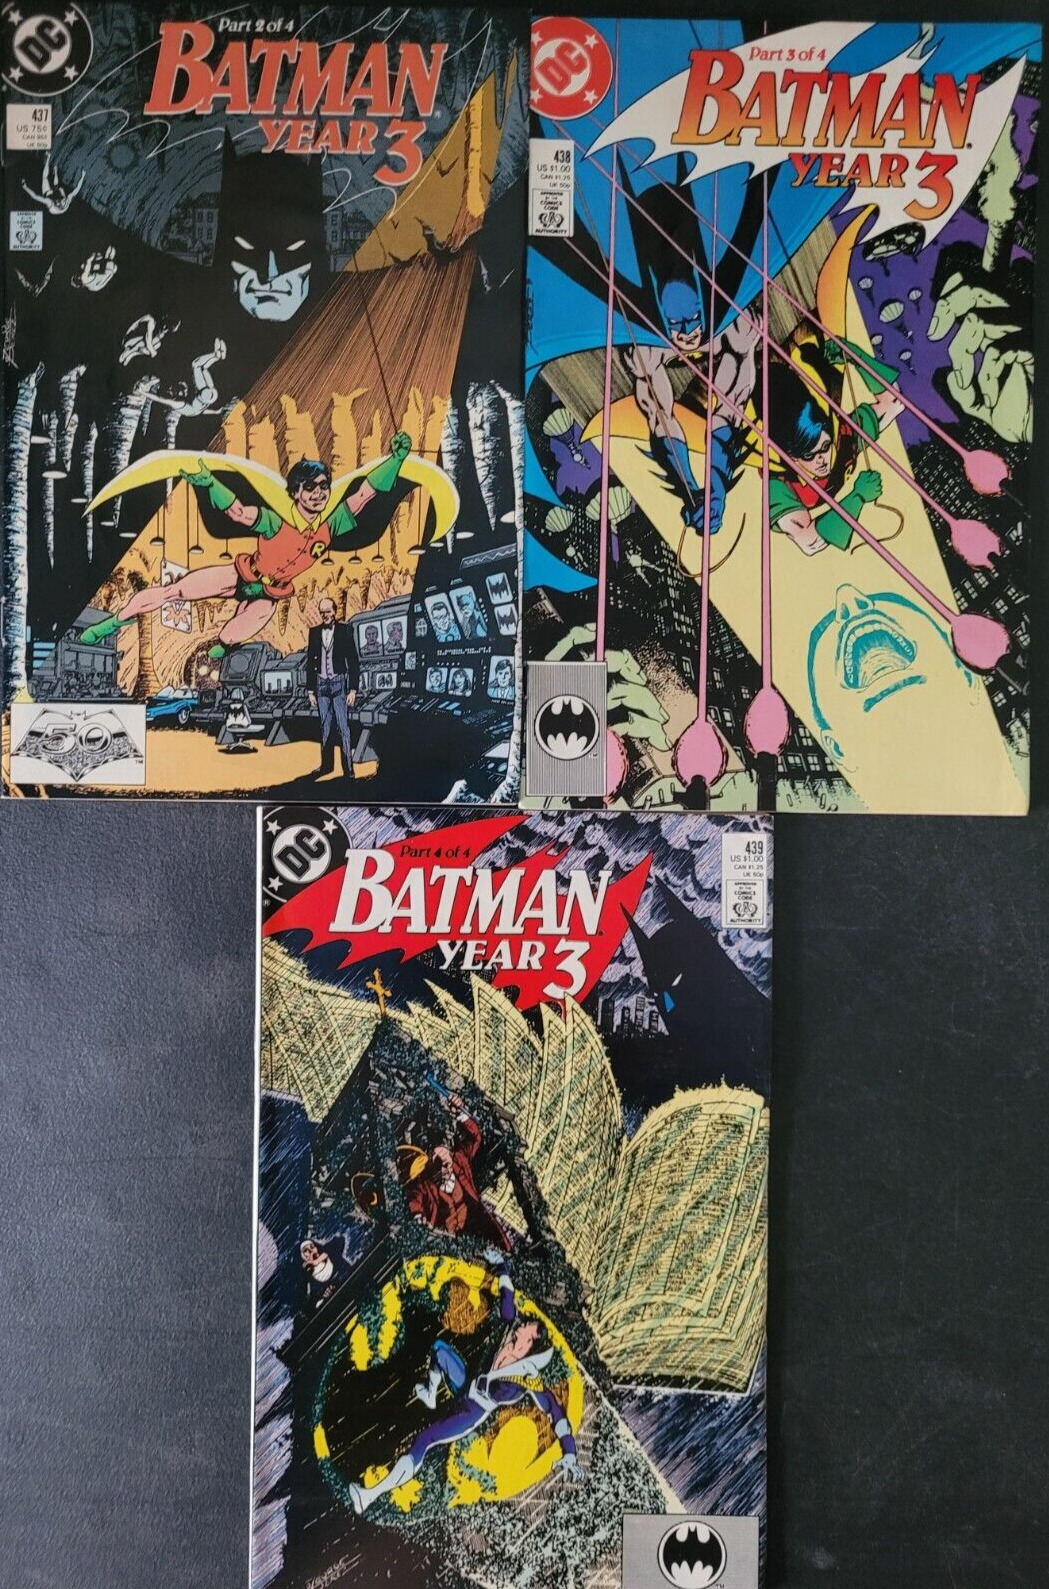 BATMAN #437 438 439 (1989) GEORGE PEREZ COVERS EACH AUTOGRAPHED PAT BRODERICK